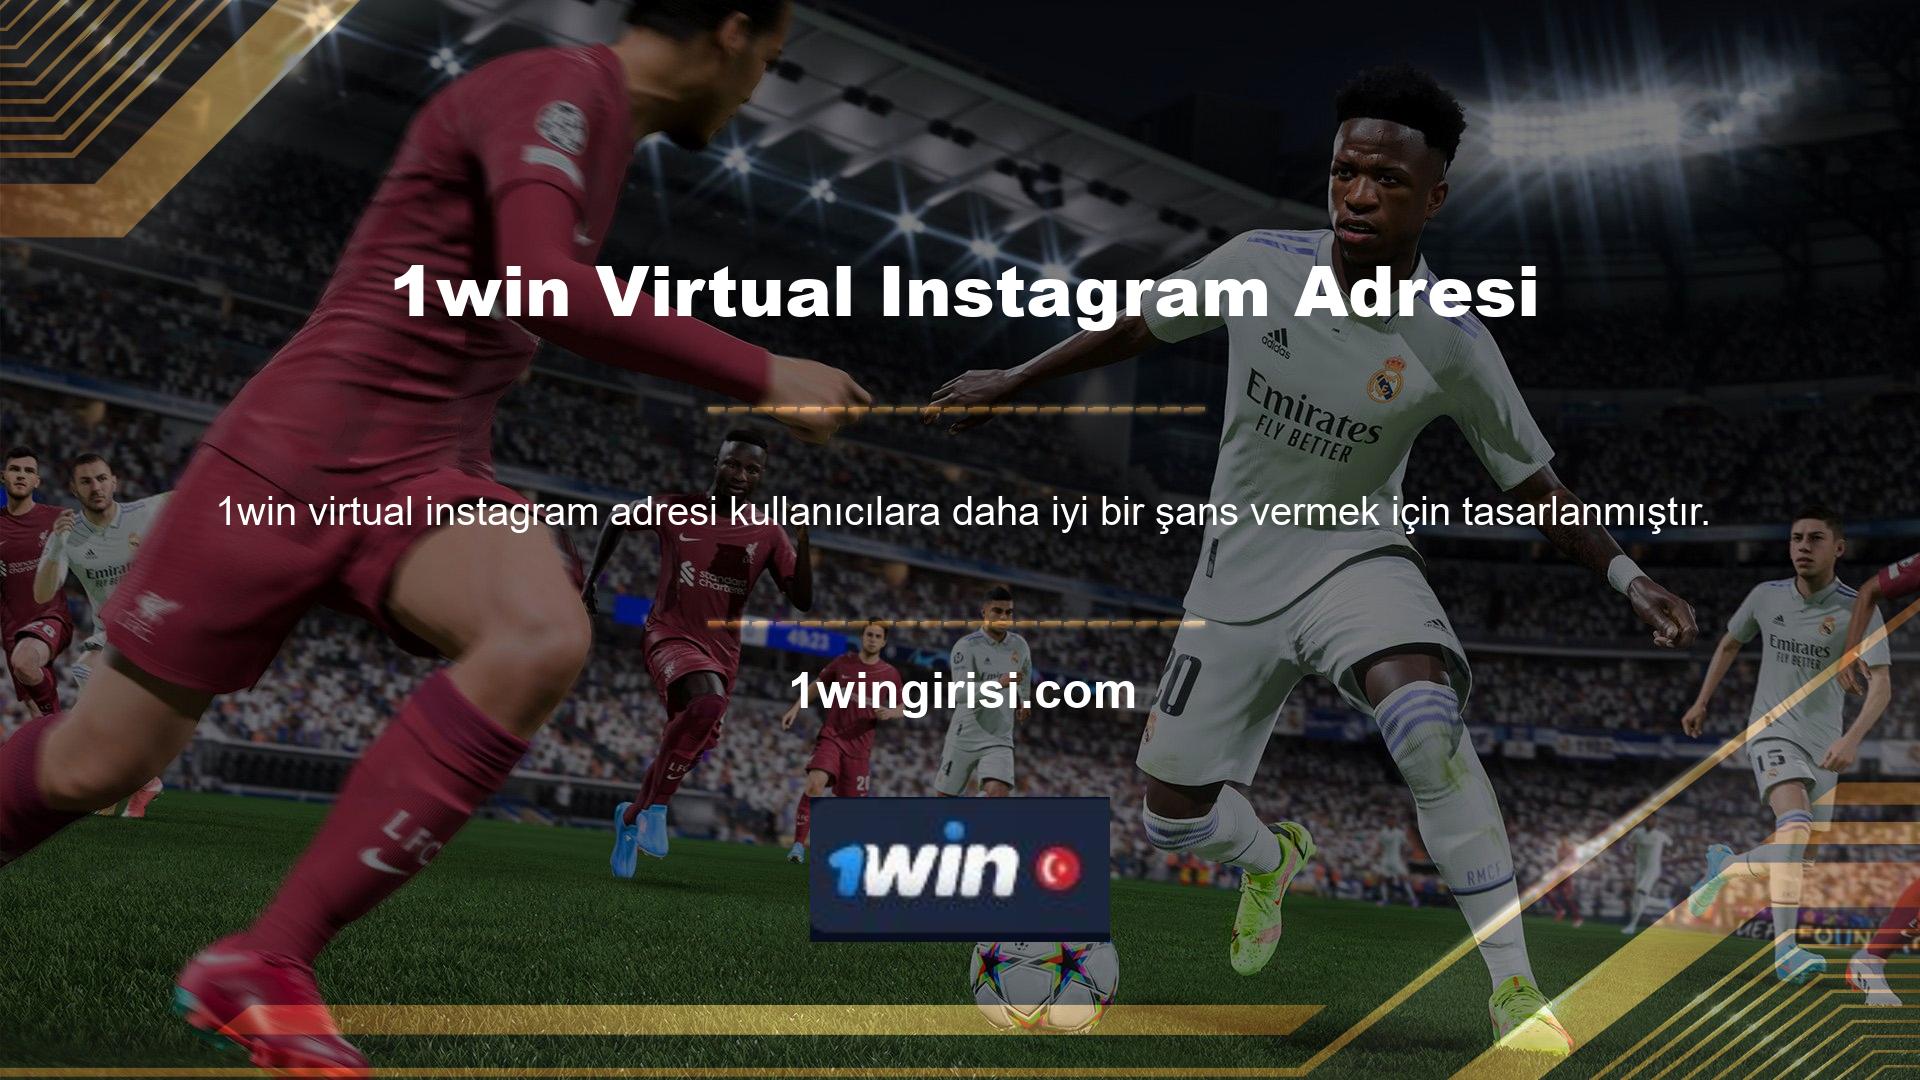 1win Instagram adresi, sanal bahis bölümü üyeleri için farklı kategorilerde sanal bahis oyunları sunmaktadır